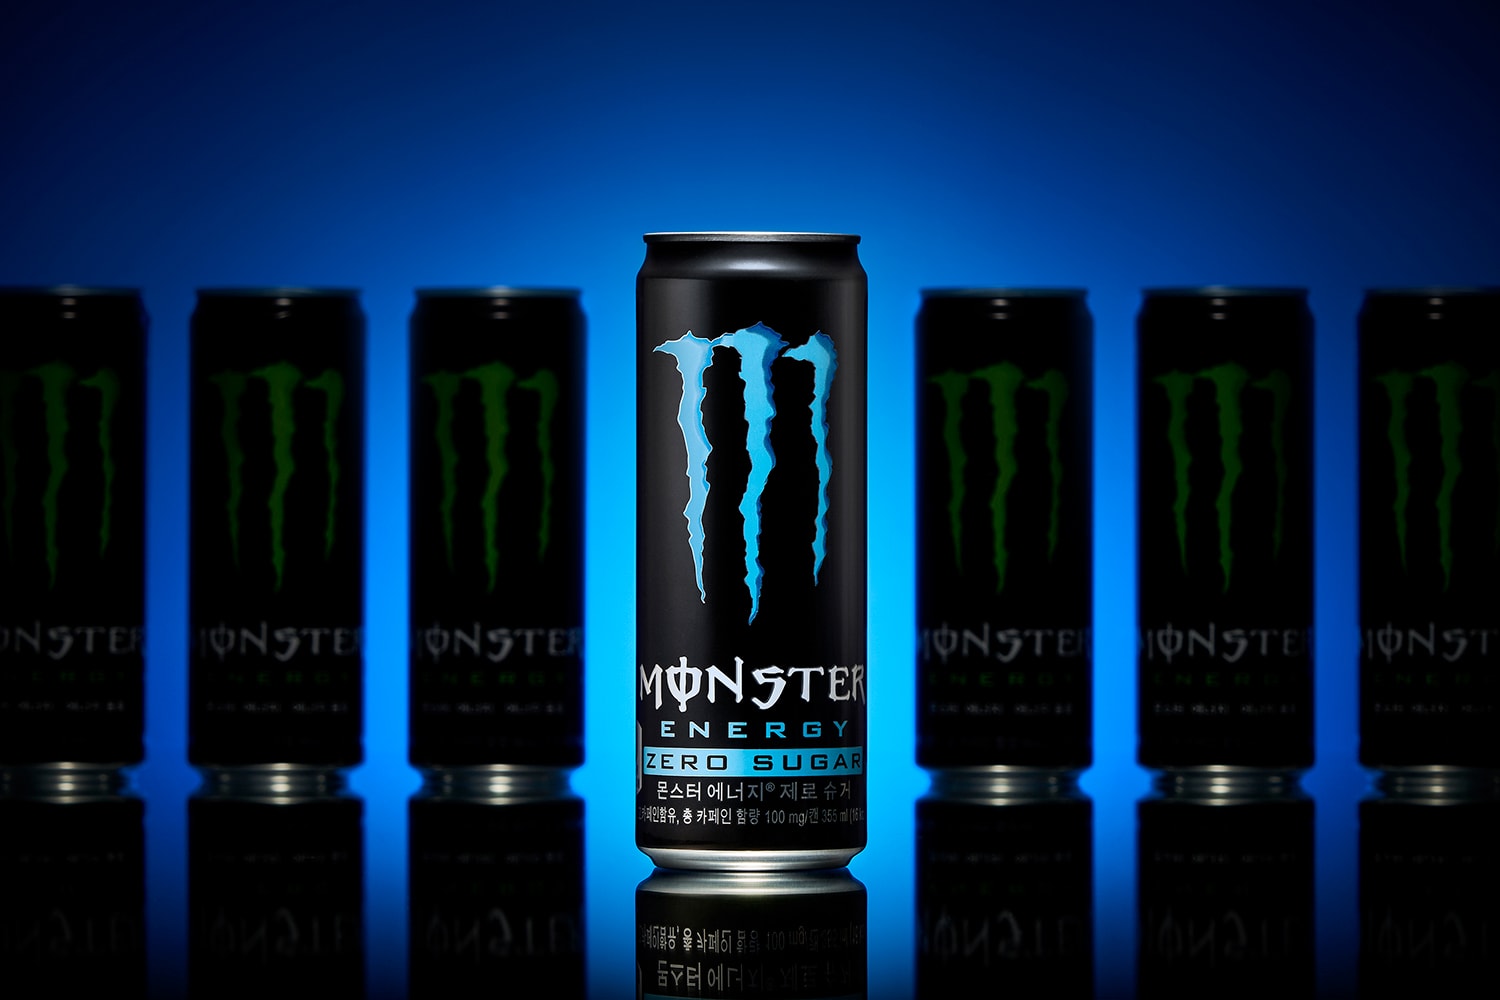 더 콰이엇이 함께 한 ‘몬스터 에너지 제로 슈거’ 브랜드 영상 공개, monster energy, suger zero